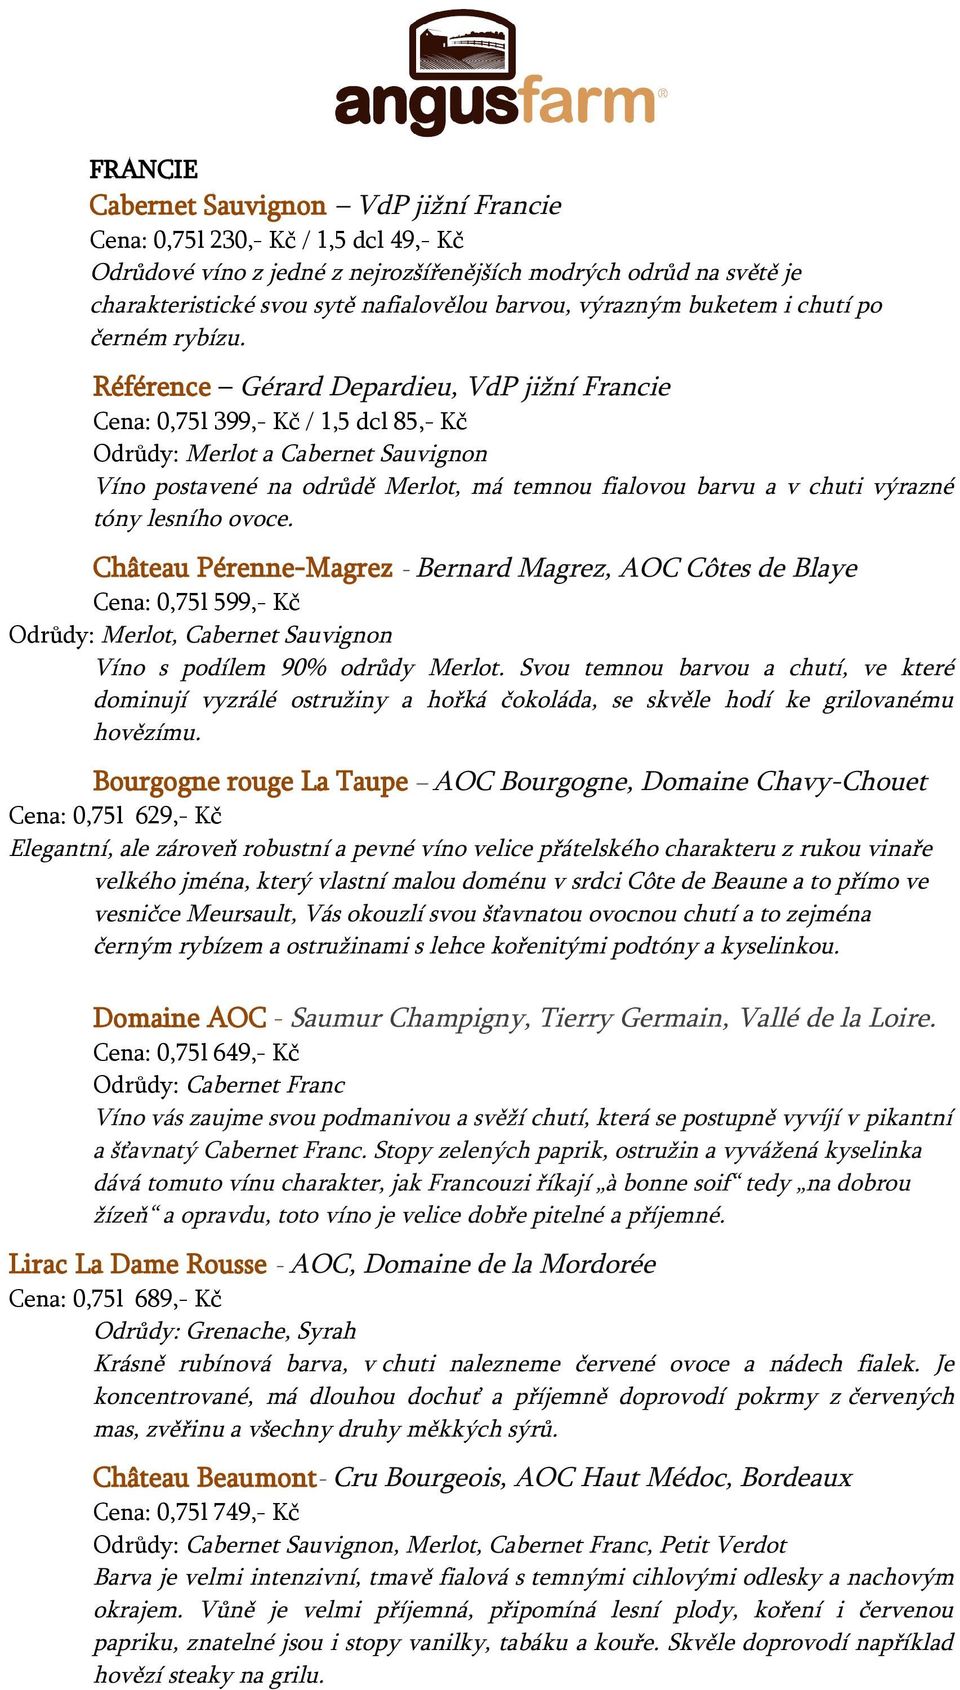 Référence Gérard Depardieu, VdP jižní Francie Cena: 0,75l 399,- Kč / 1,5 dcl 85,- Kč Odrůdy: Merlot a Cabernet Sauvignon Víno postavené na odrůdě Merlot, má temnou fialovou barvu a v chuti výrazné